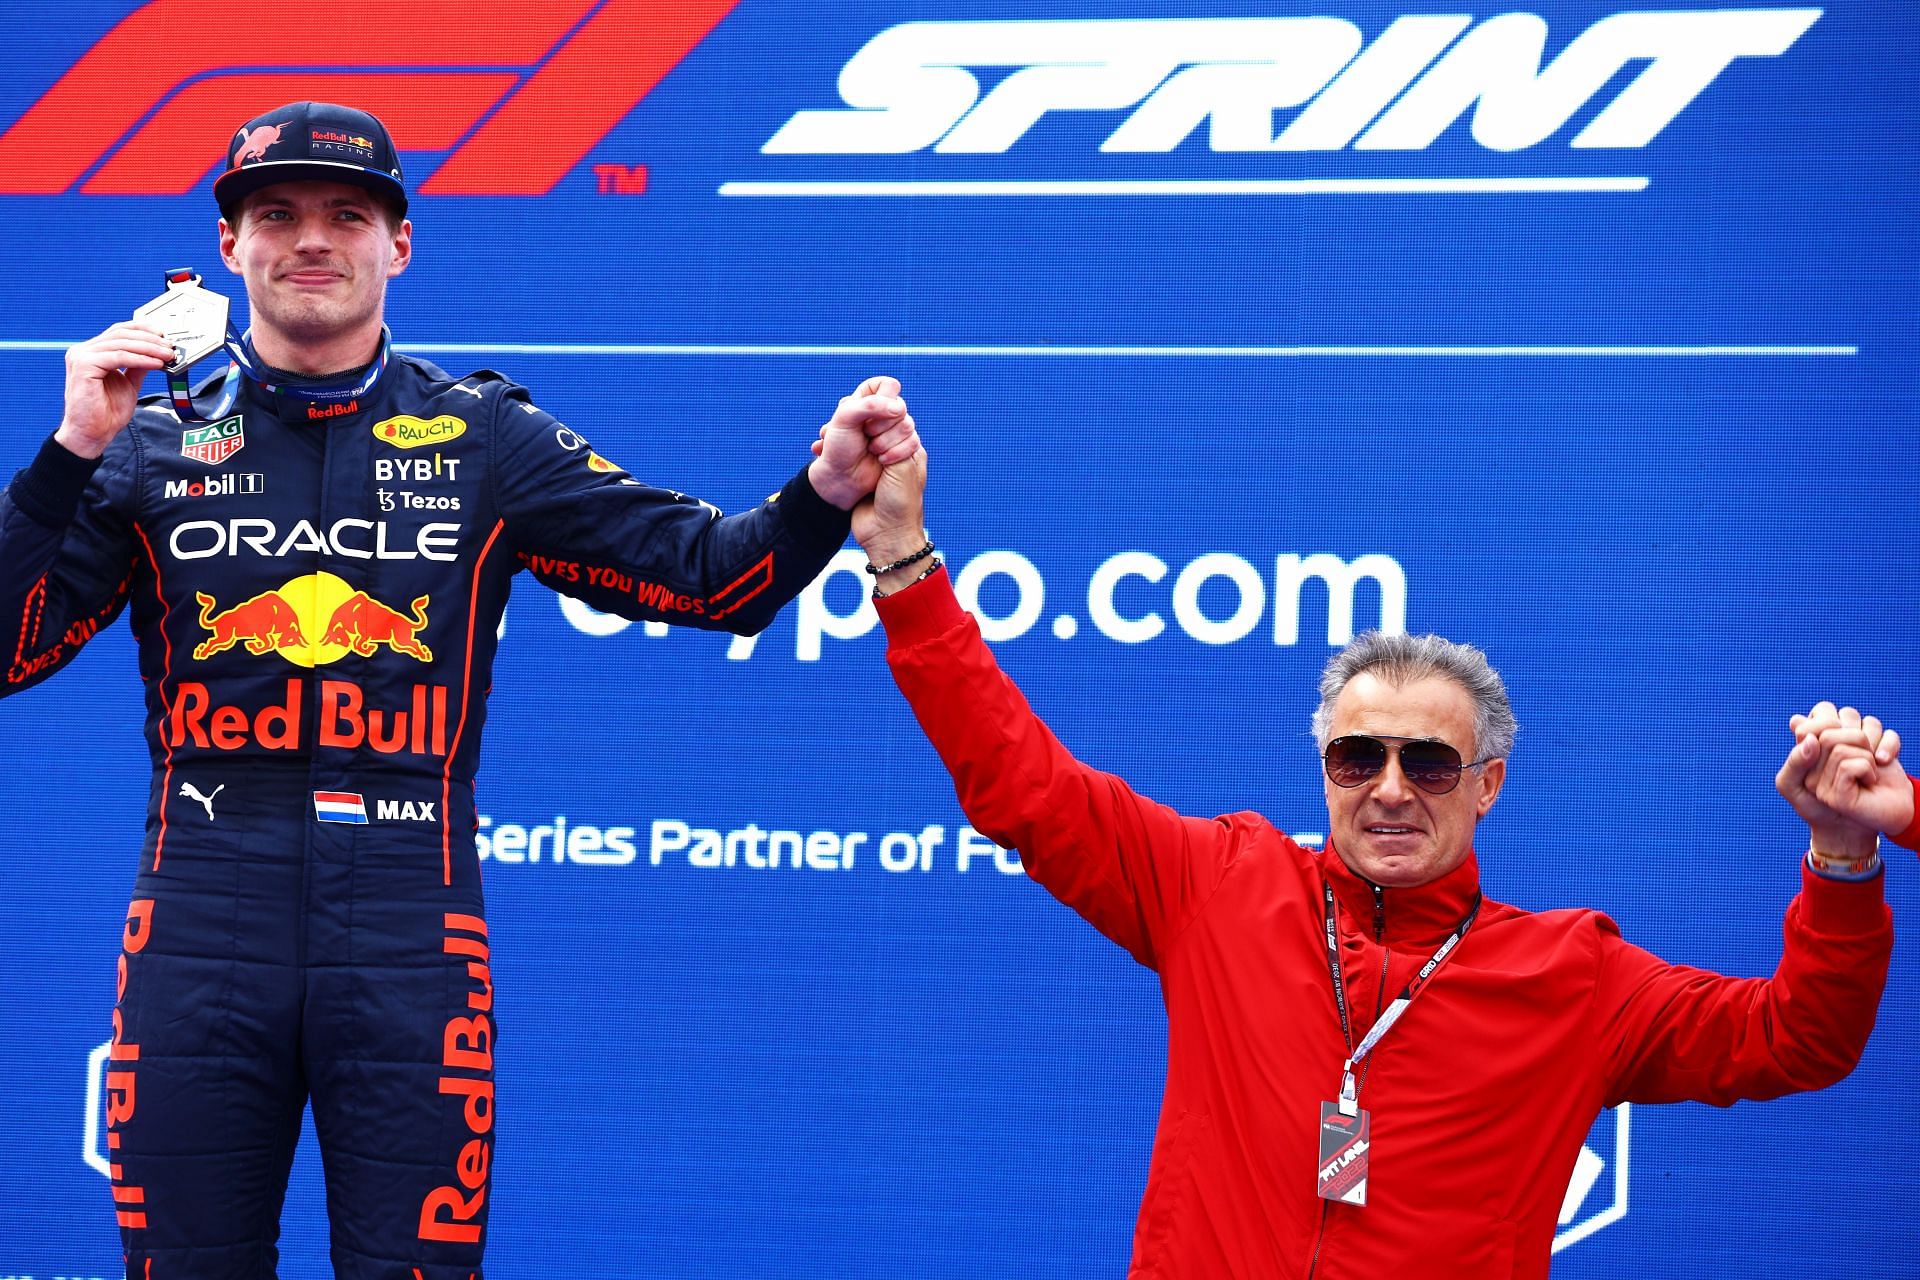 Max Verstappen won the sprint race for Red Bull